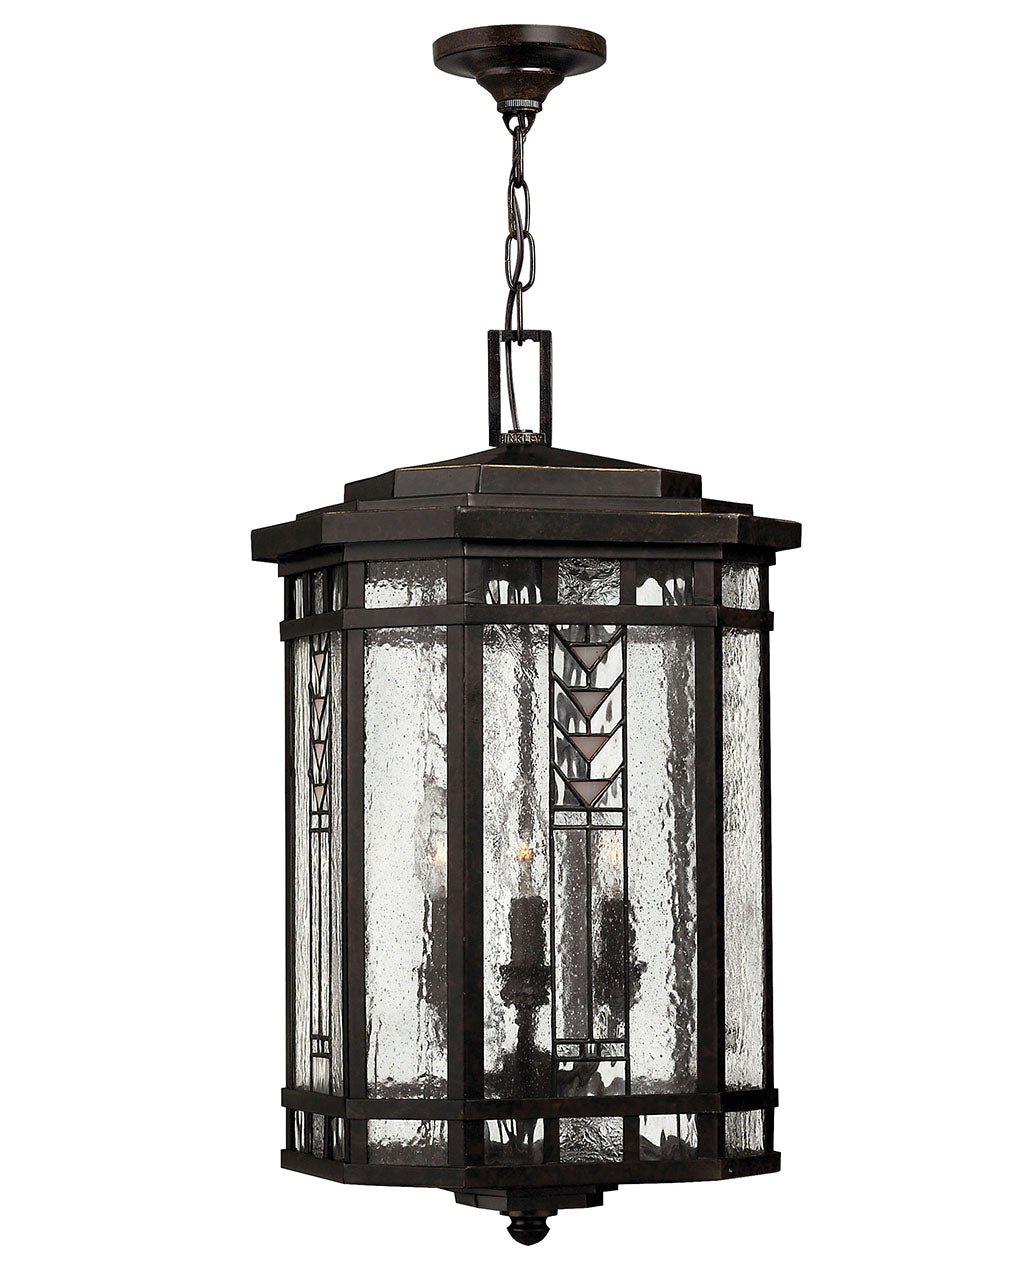 OUTDOOR TAHOE Hanging Lantern Outdoor Light Fixture l Hanging Hinkley Regency Bronze 12.0x12.0x22.5 